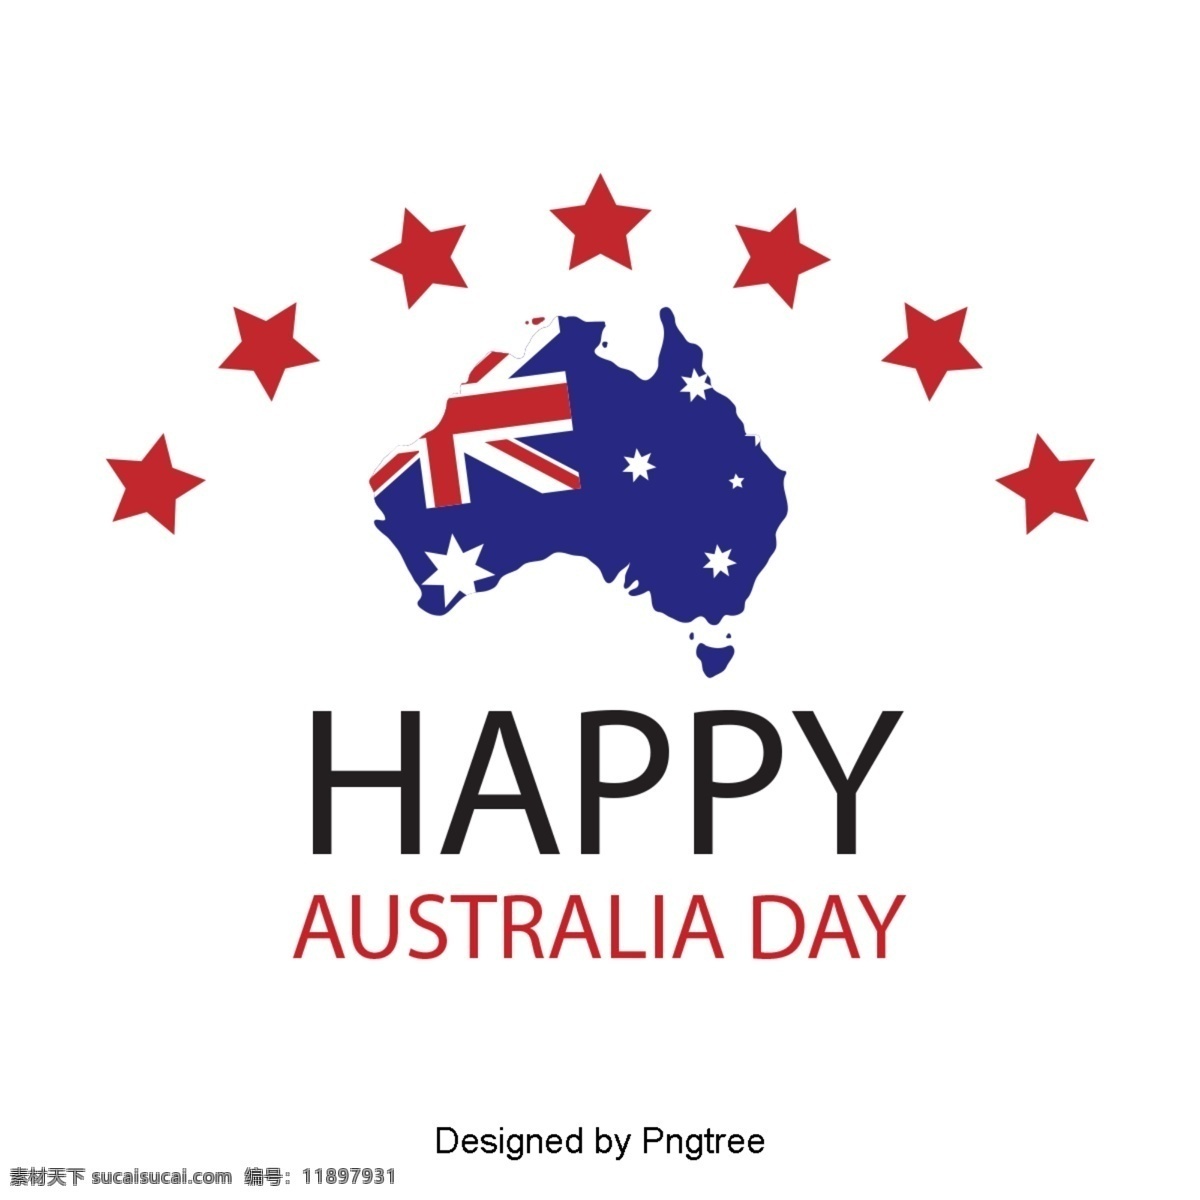 澳大利亚 日 红色 星星 地图 字体 澳大利亚日 蓝色 旗帜 爱国